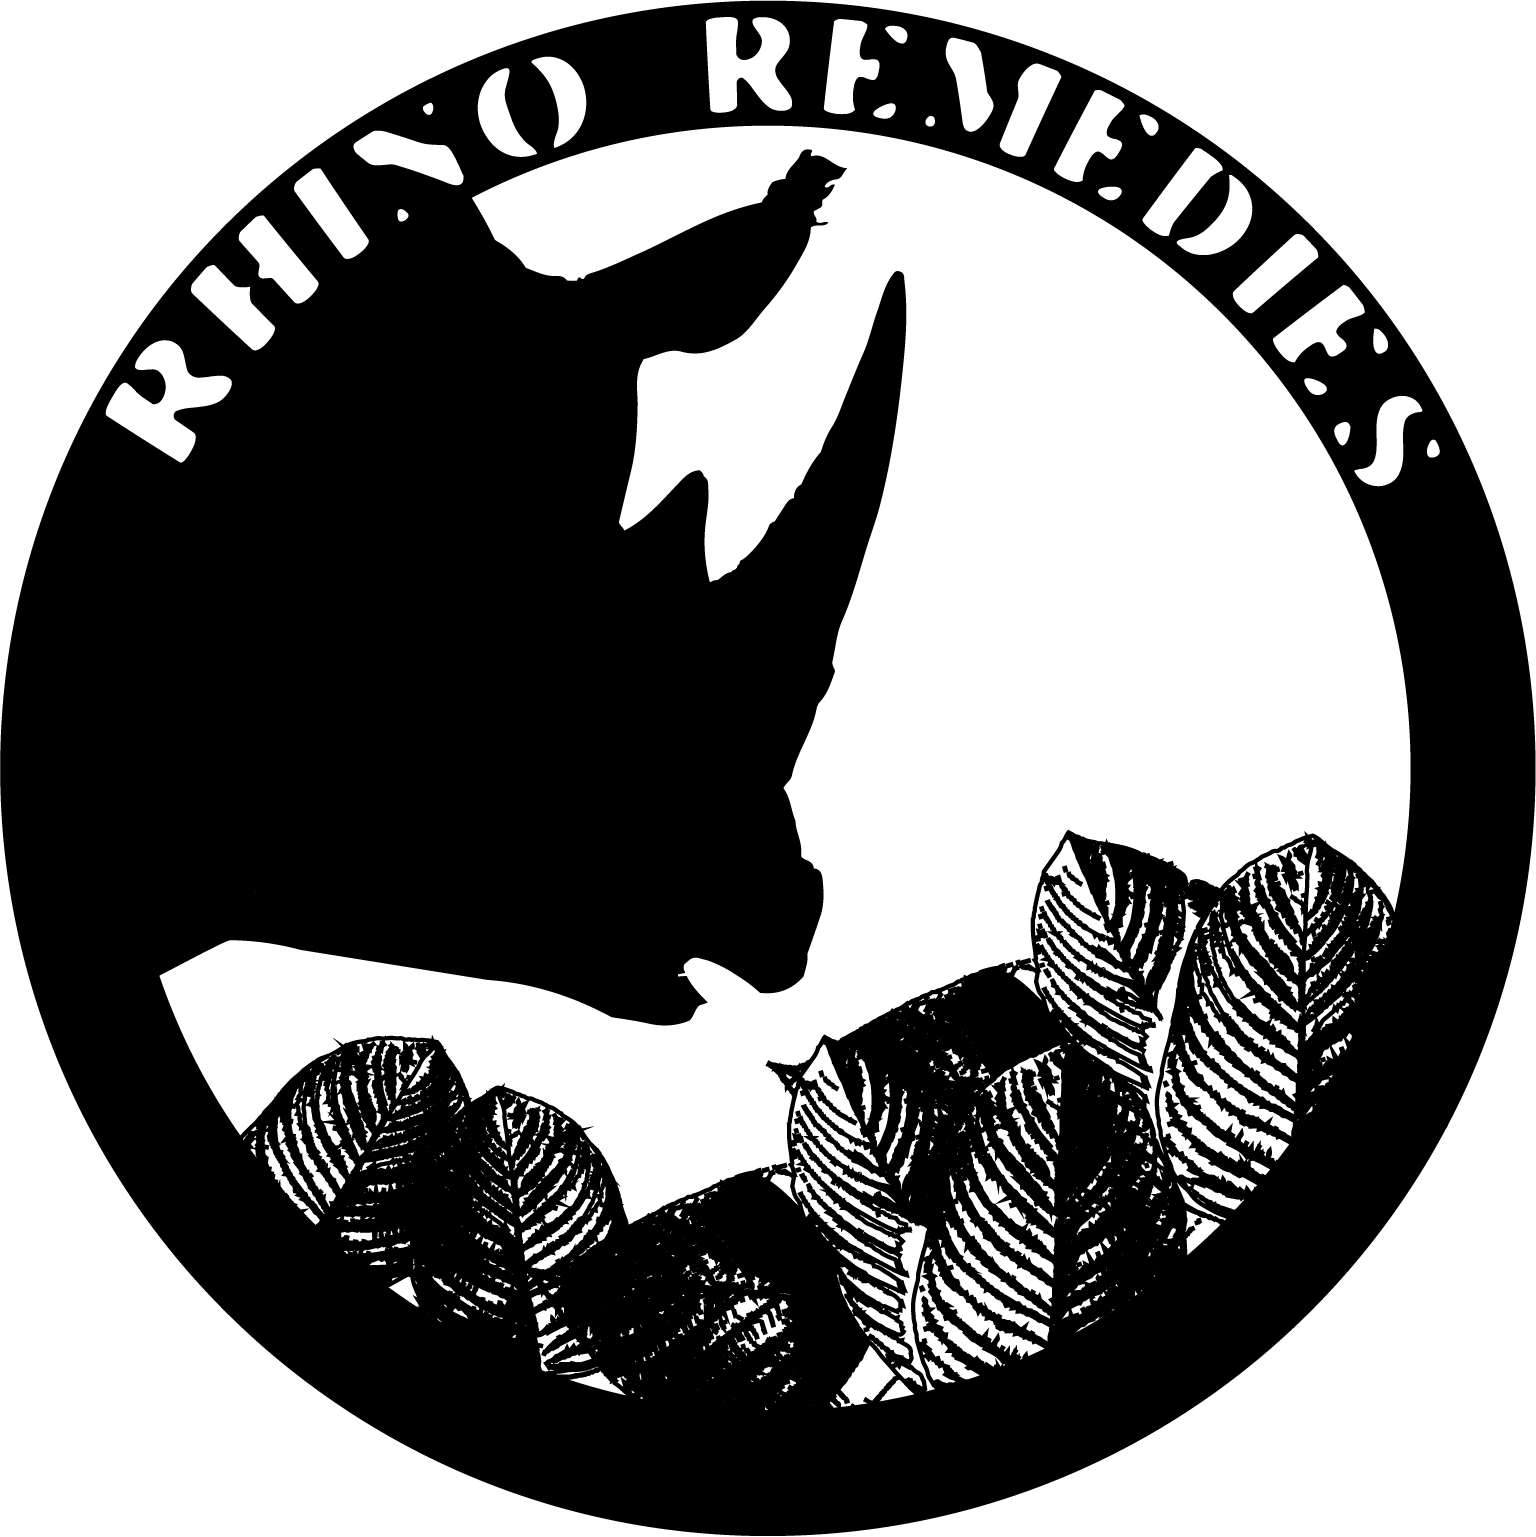 Rhino Remedies